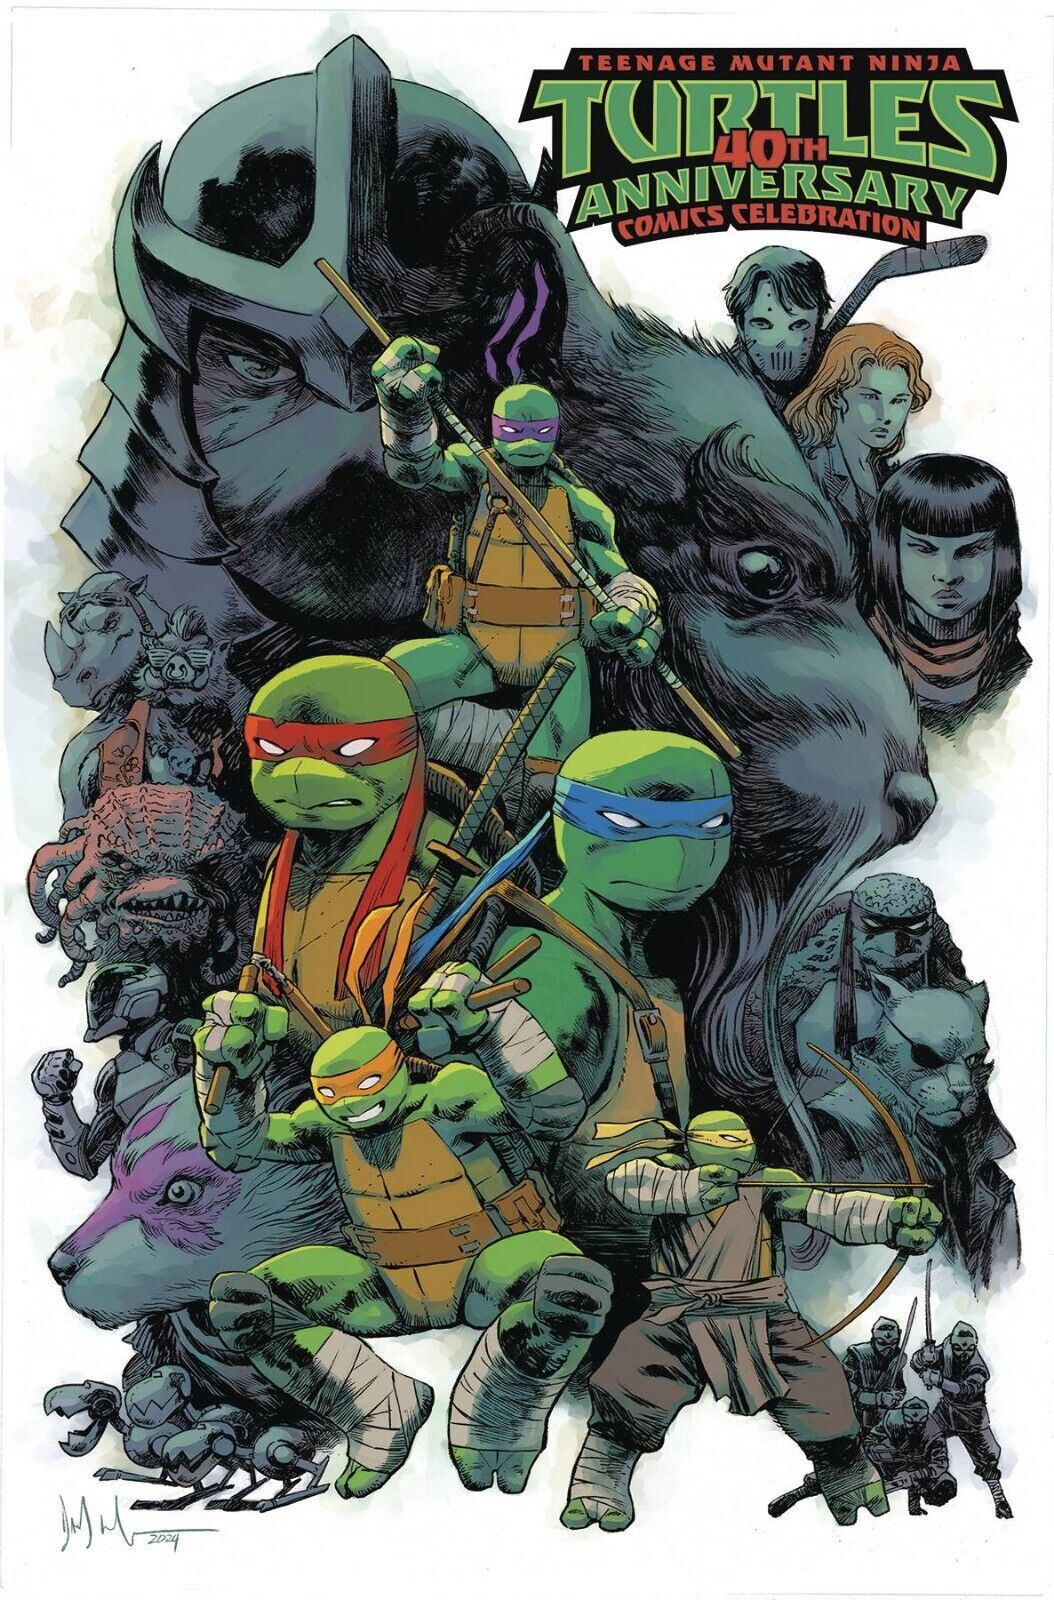 Teenage Mutant Ninja Turtles 40th Anniversary 1:50 Watcher PRESALE 7/10 TMNT